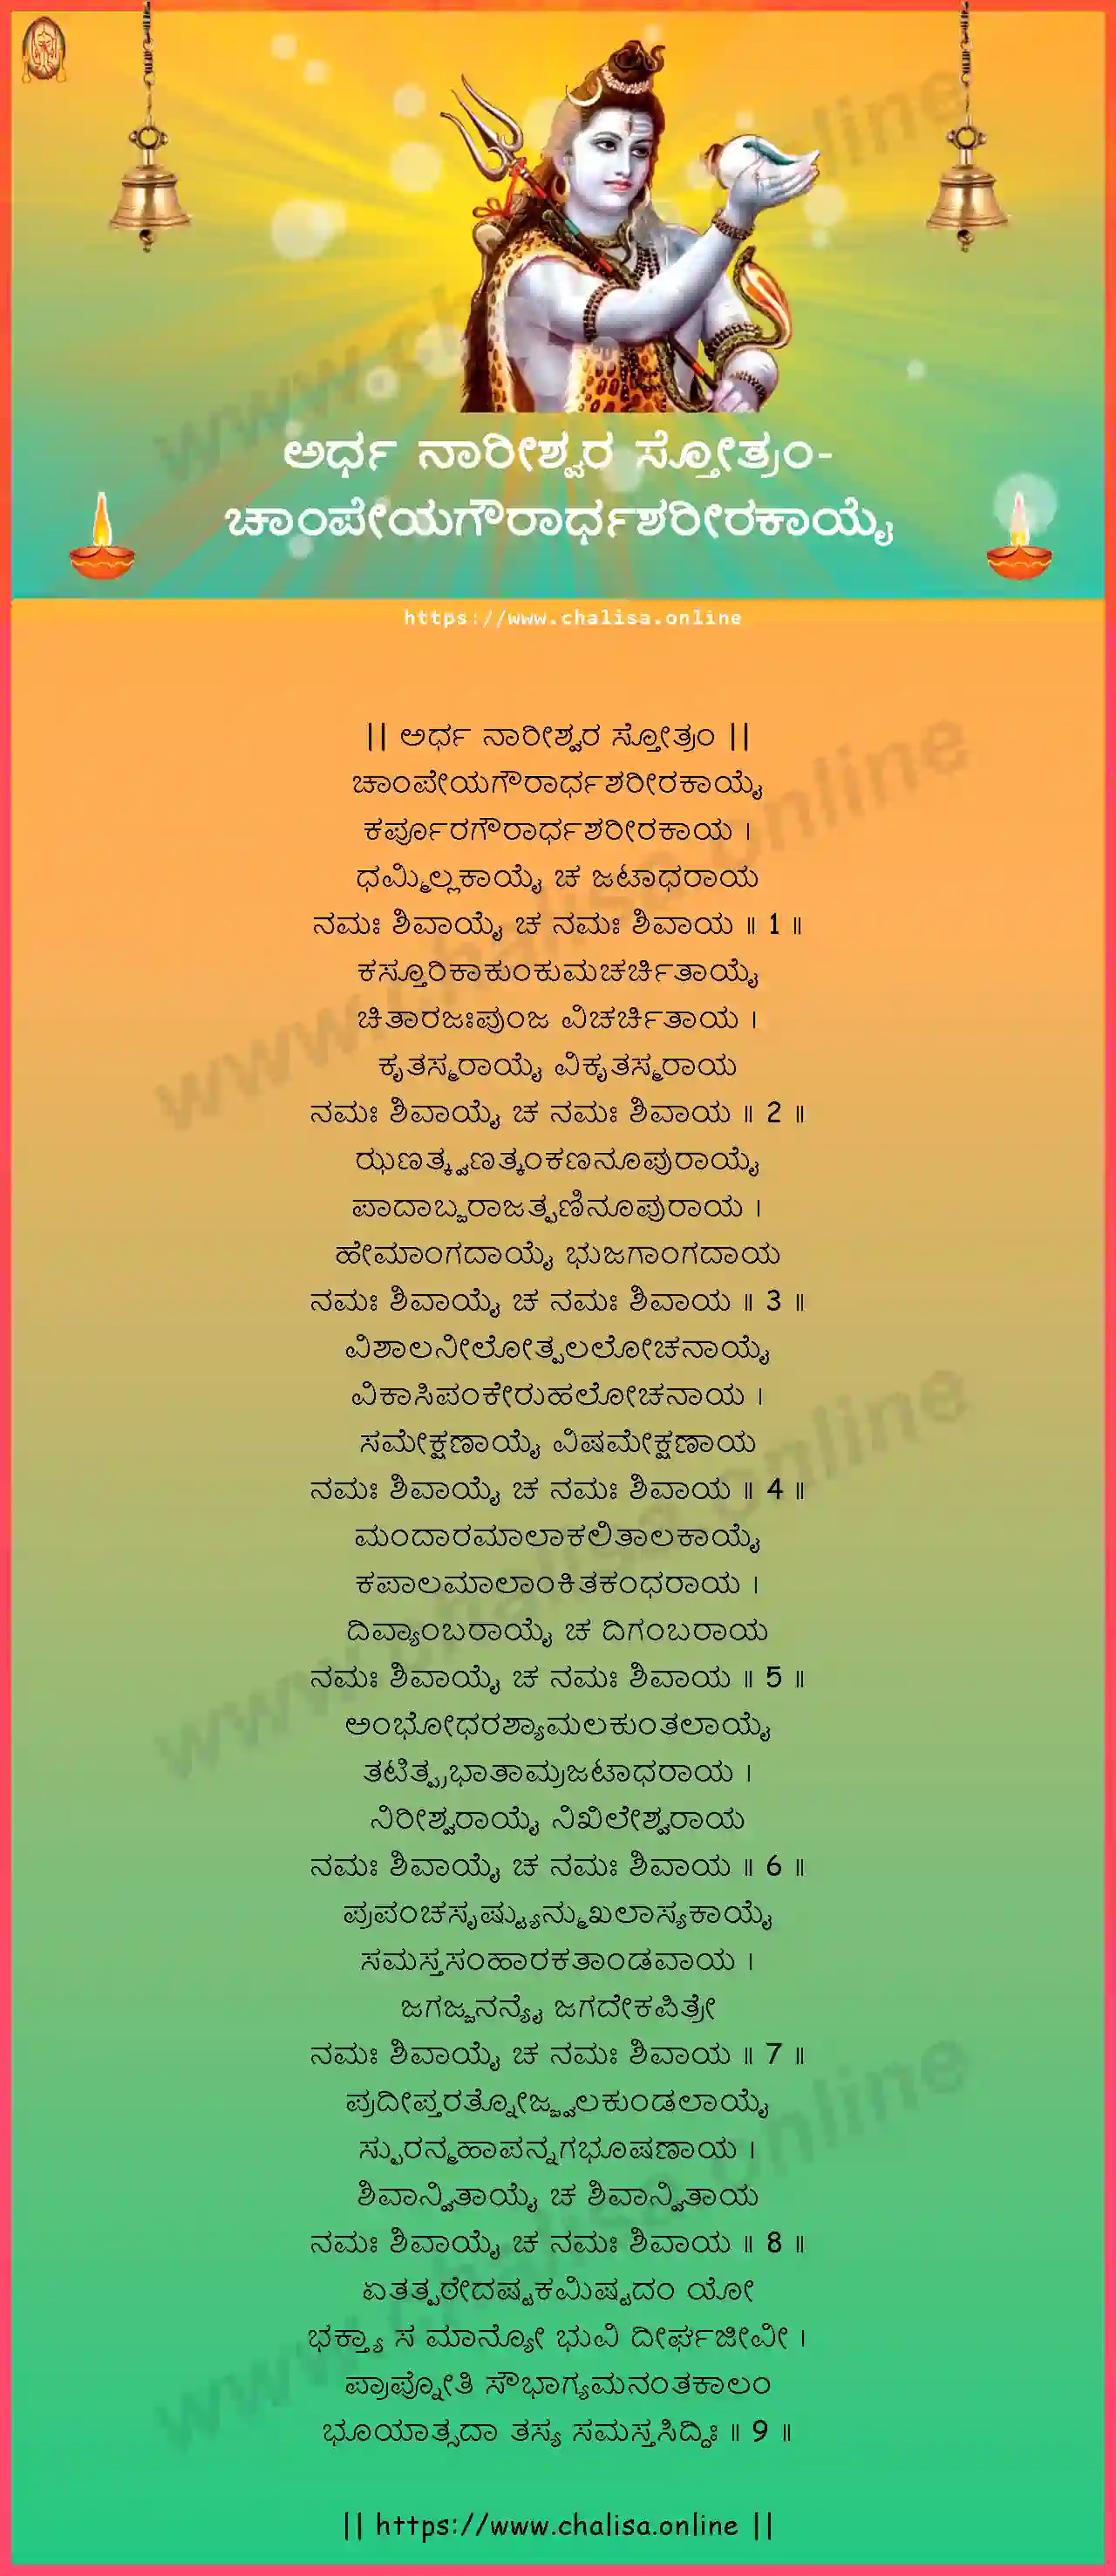 champeyagaurardhasarirakayai-ardha-nareeswara-stotram-kannada-kannada-lyrics-download